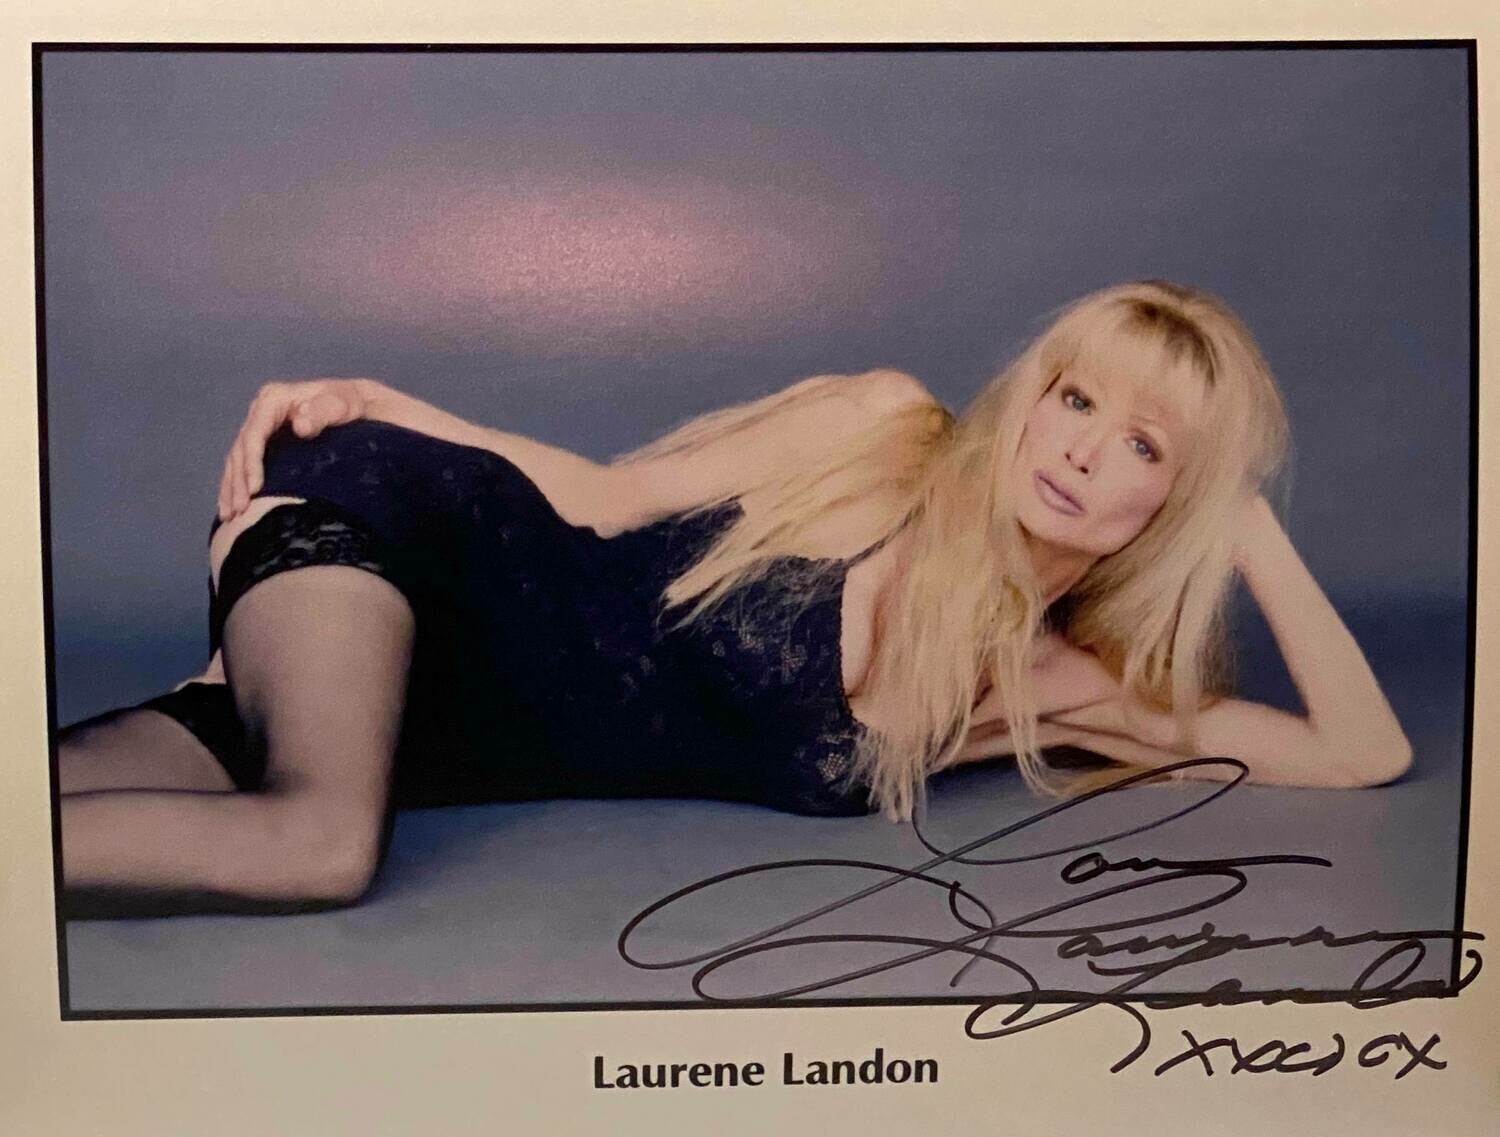 8x10 Promo Photo Autographed By Laurene Landon #13